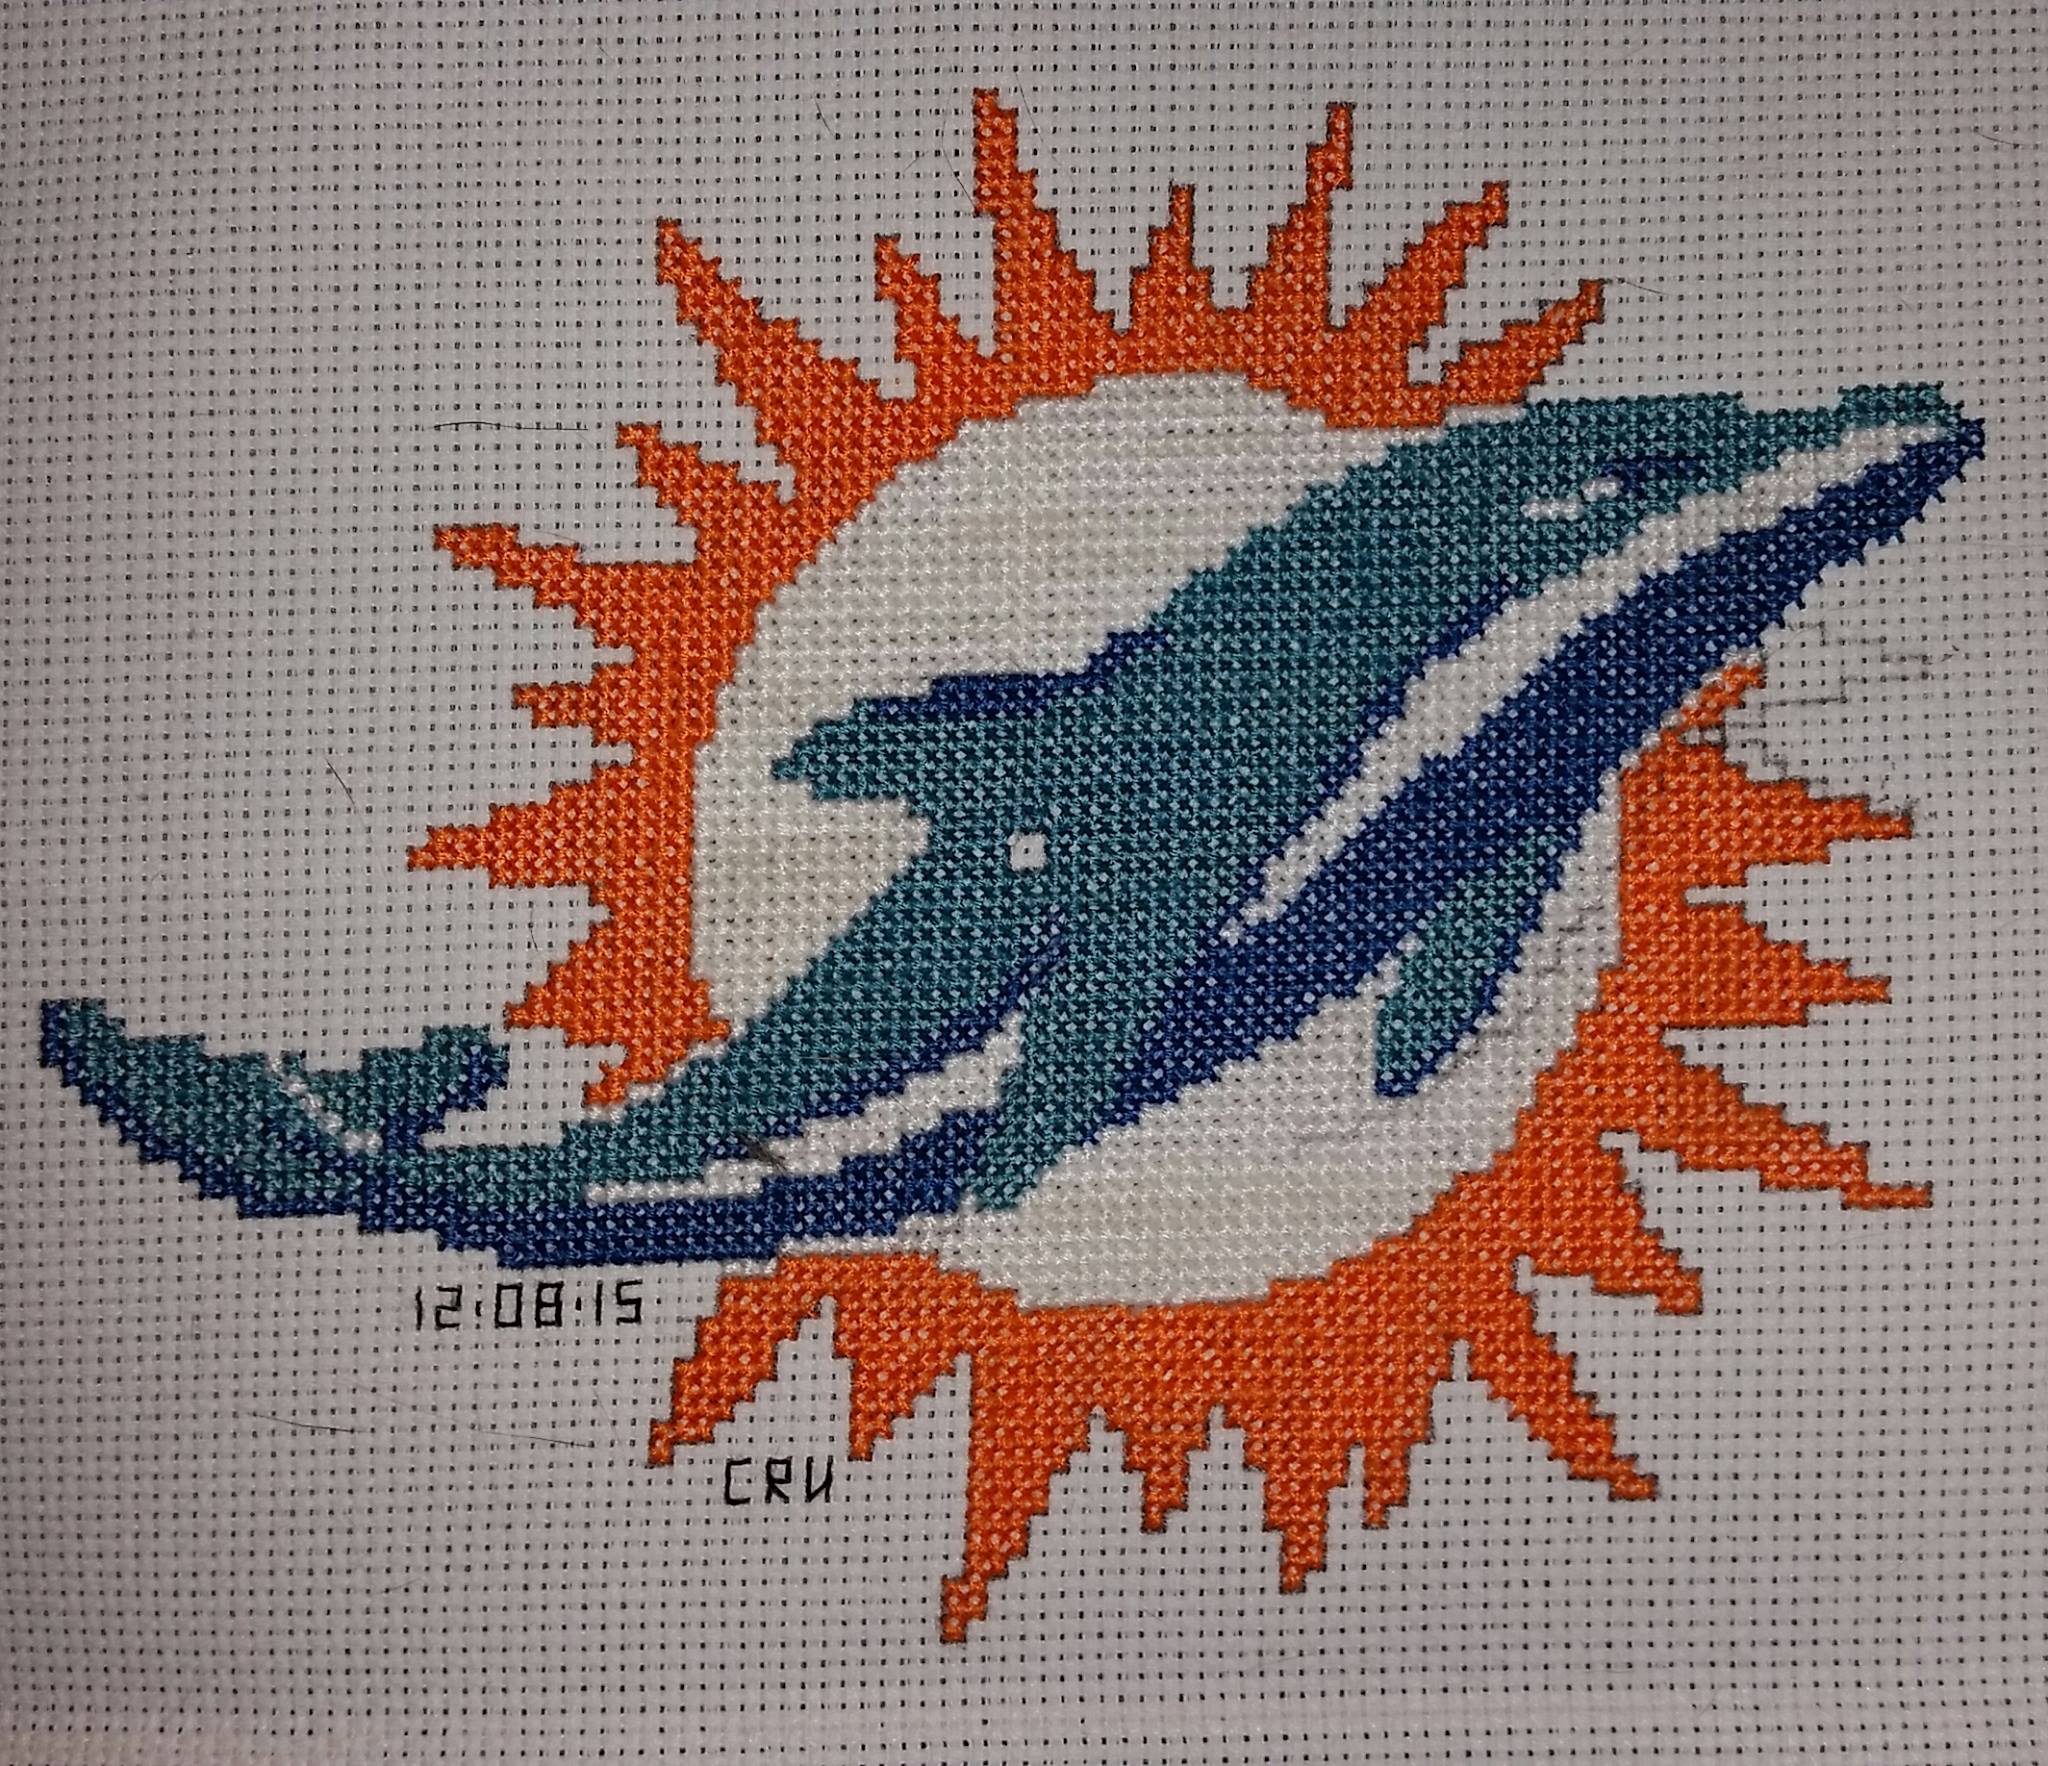 Logo dei Miami Dolphins foto lavoro punto croce autrice Fan su Facebook Carrie Renae Uetz